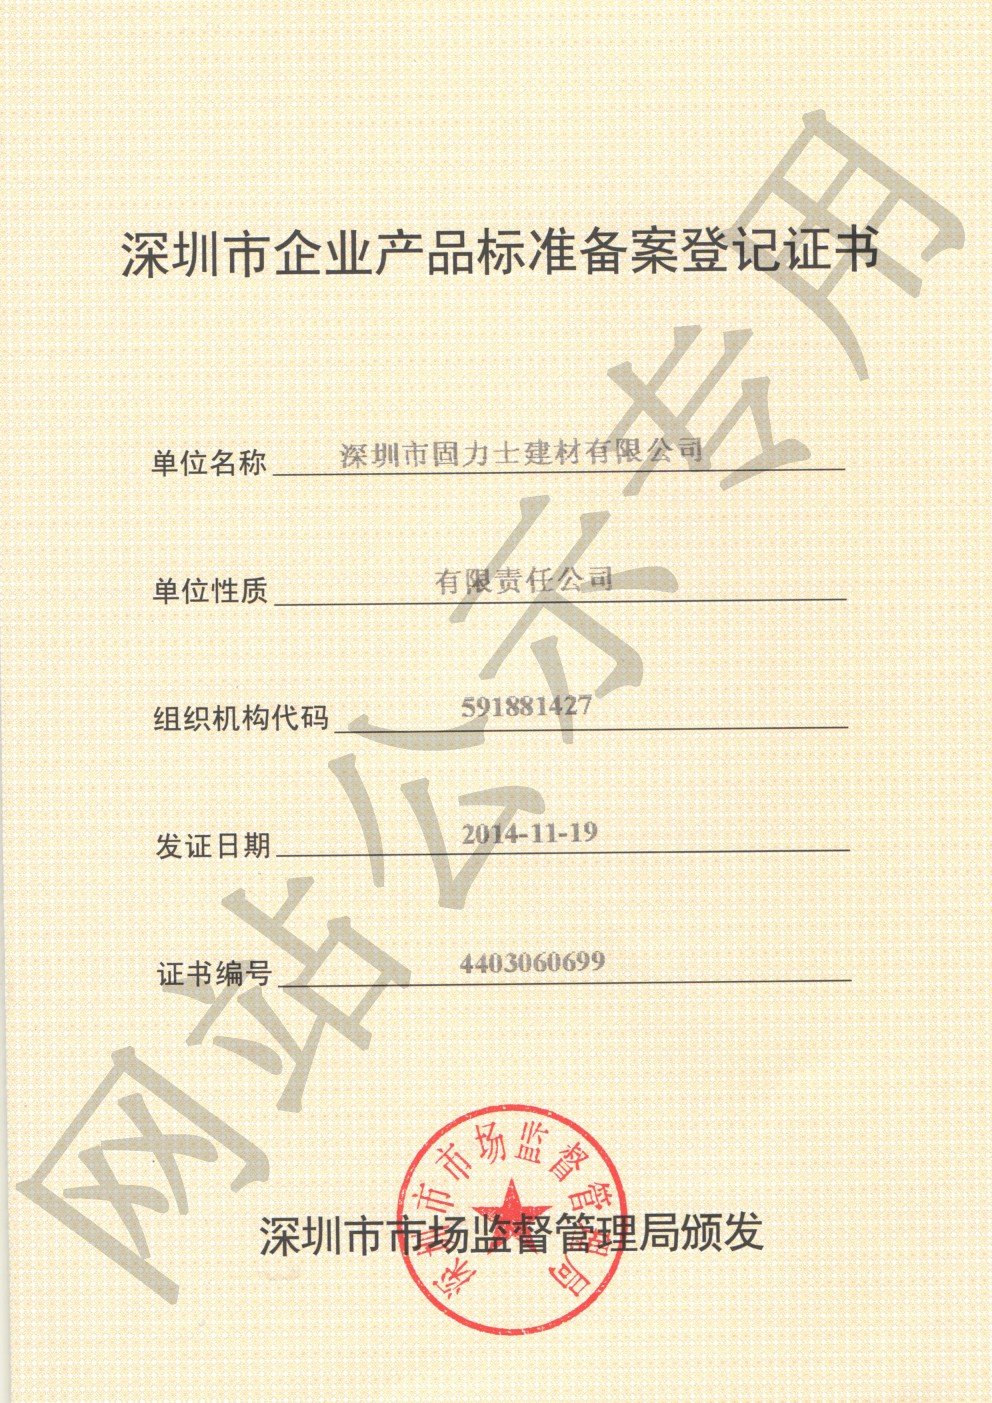 全椒企业产品标准登记证书